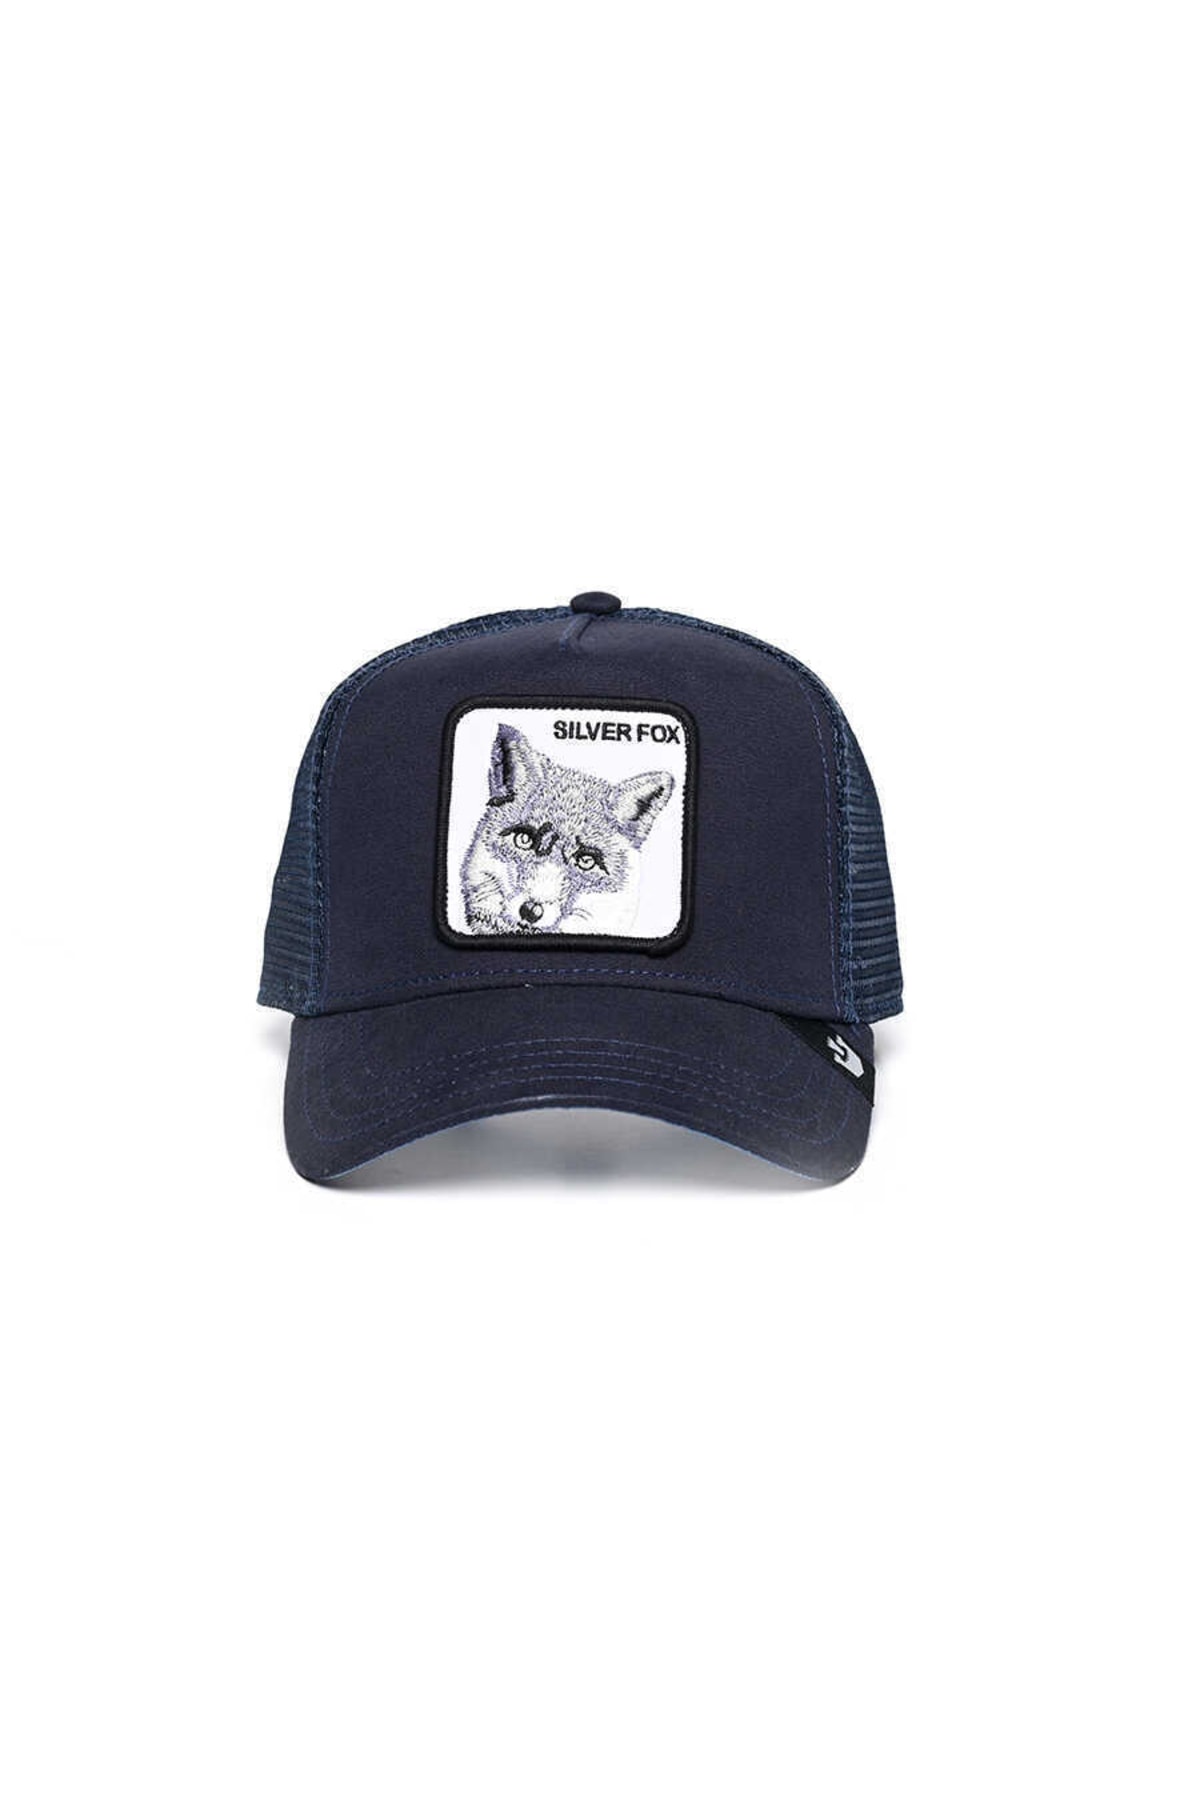 Goorin Bros Silver Fox (tilki Figürlü) Şapka 101-0390